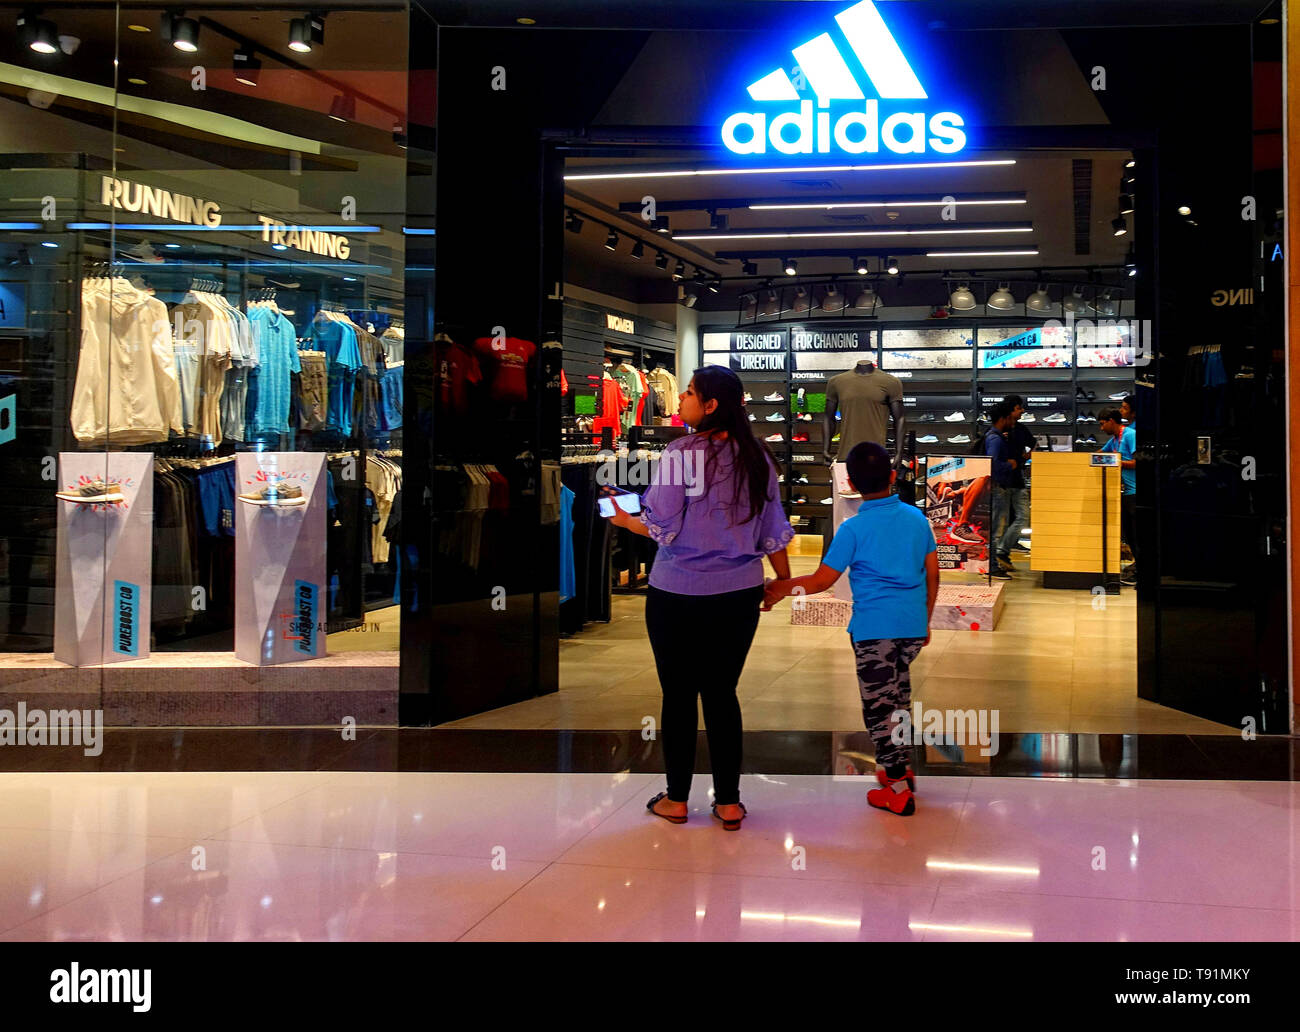 مصفاة نجيل قم بالمخاطرة كاوية في تقدم اليأس mall athens adidas shop -  kithtools.com